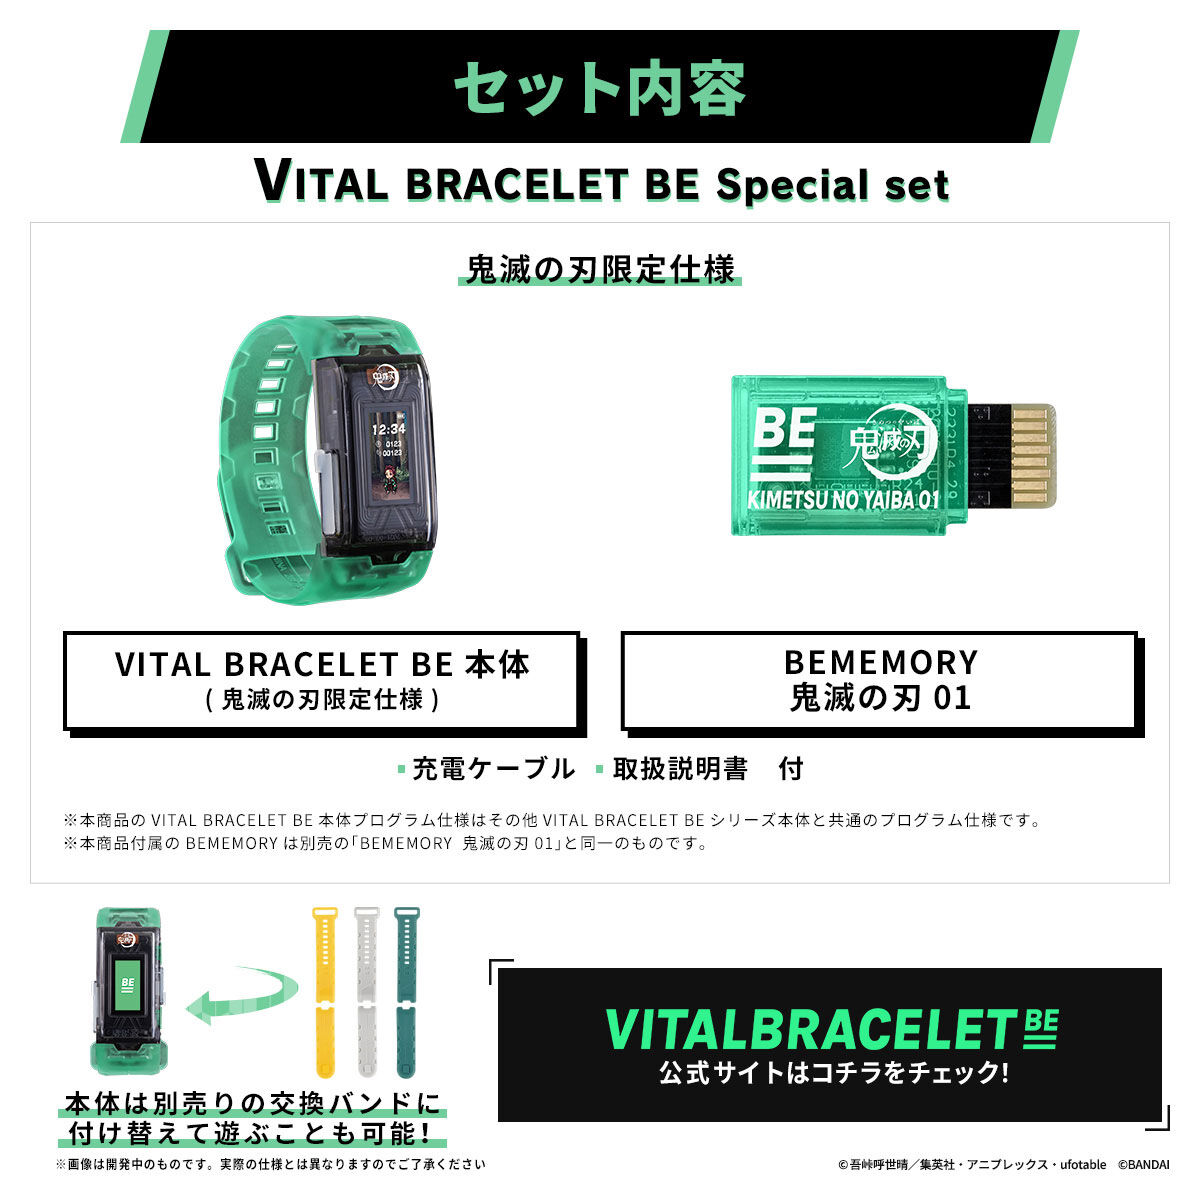 【限定販売】バイタルブレスBE『VITAL BRACELET BE 鬼滅の刃 Special set』ウェアラブル液晶玩具-008